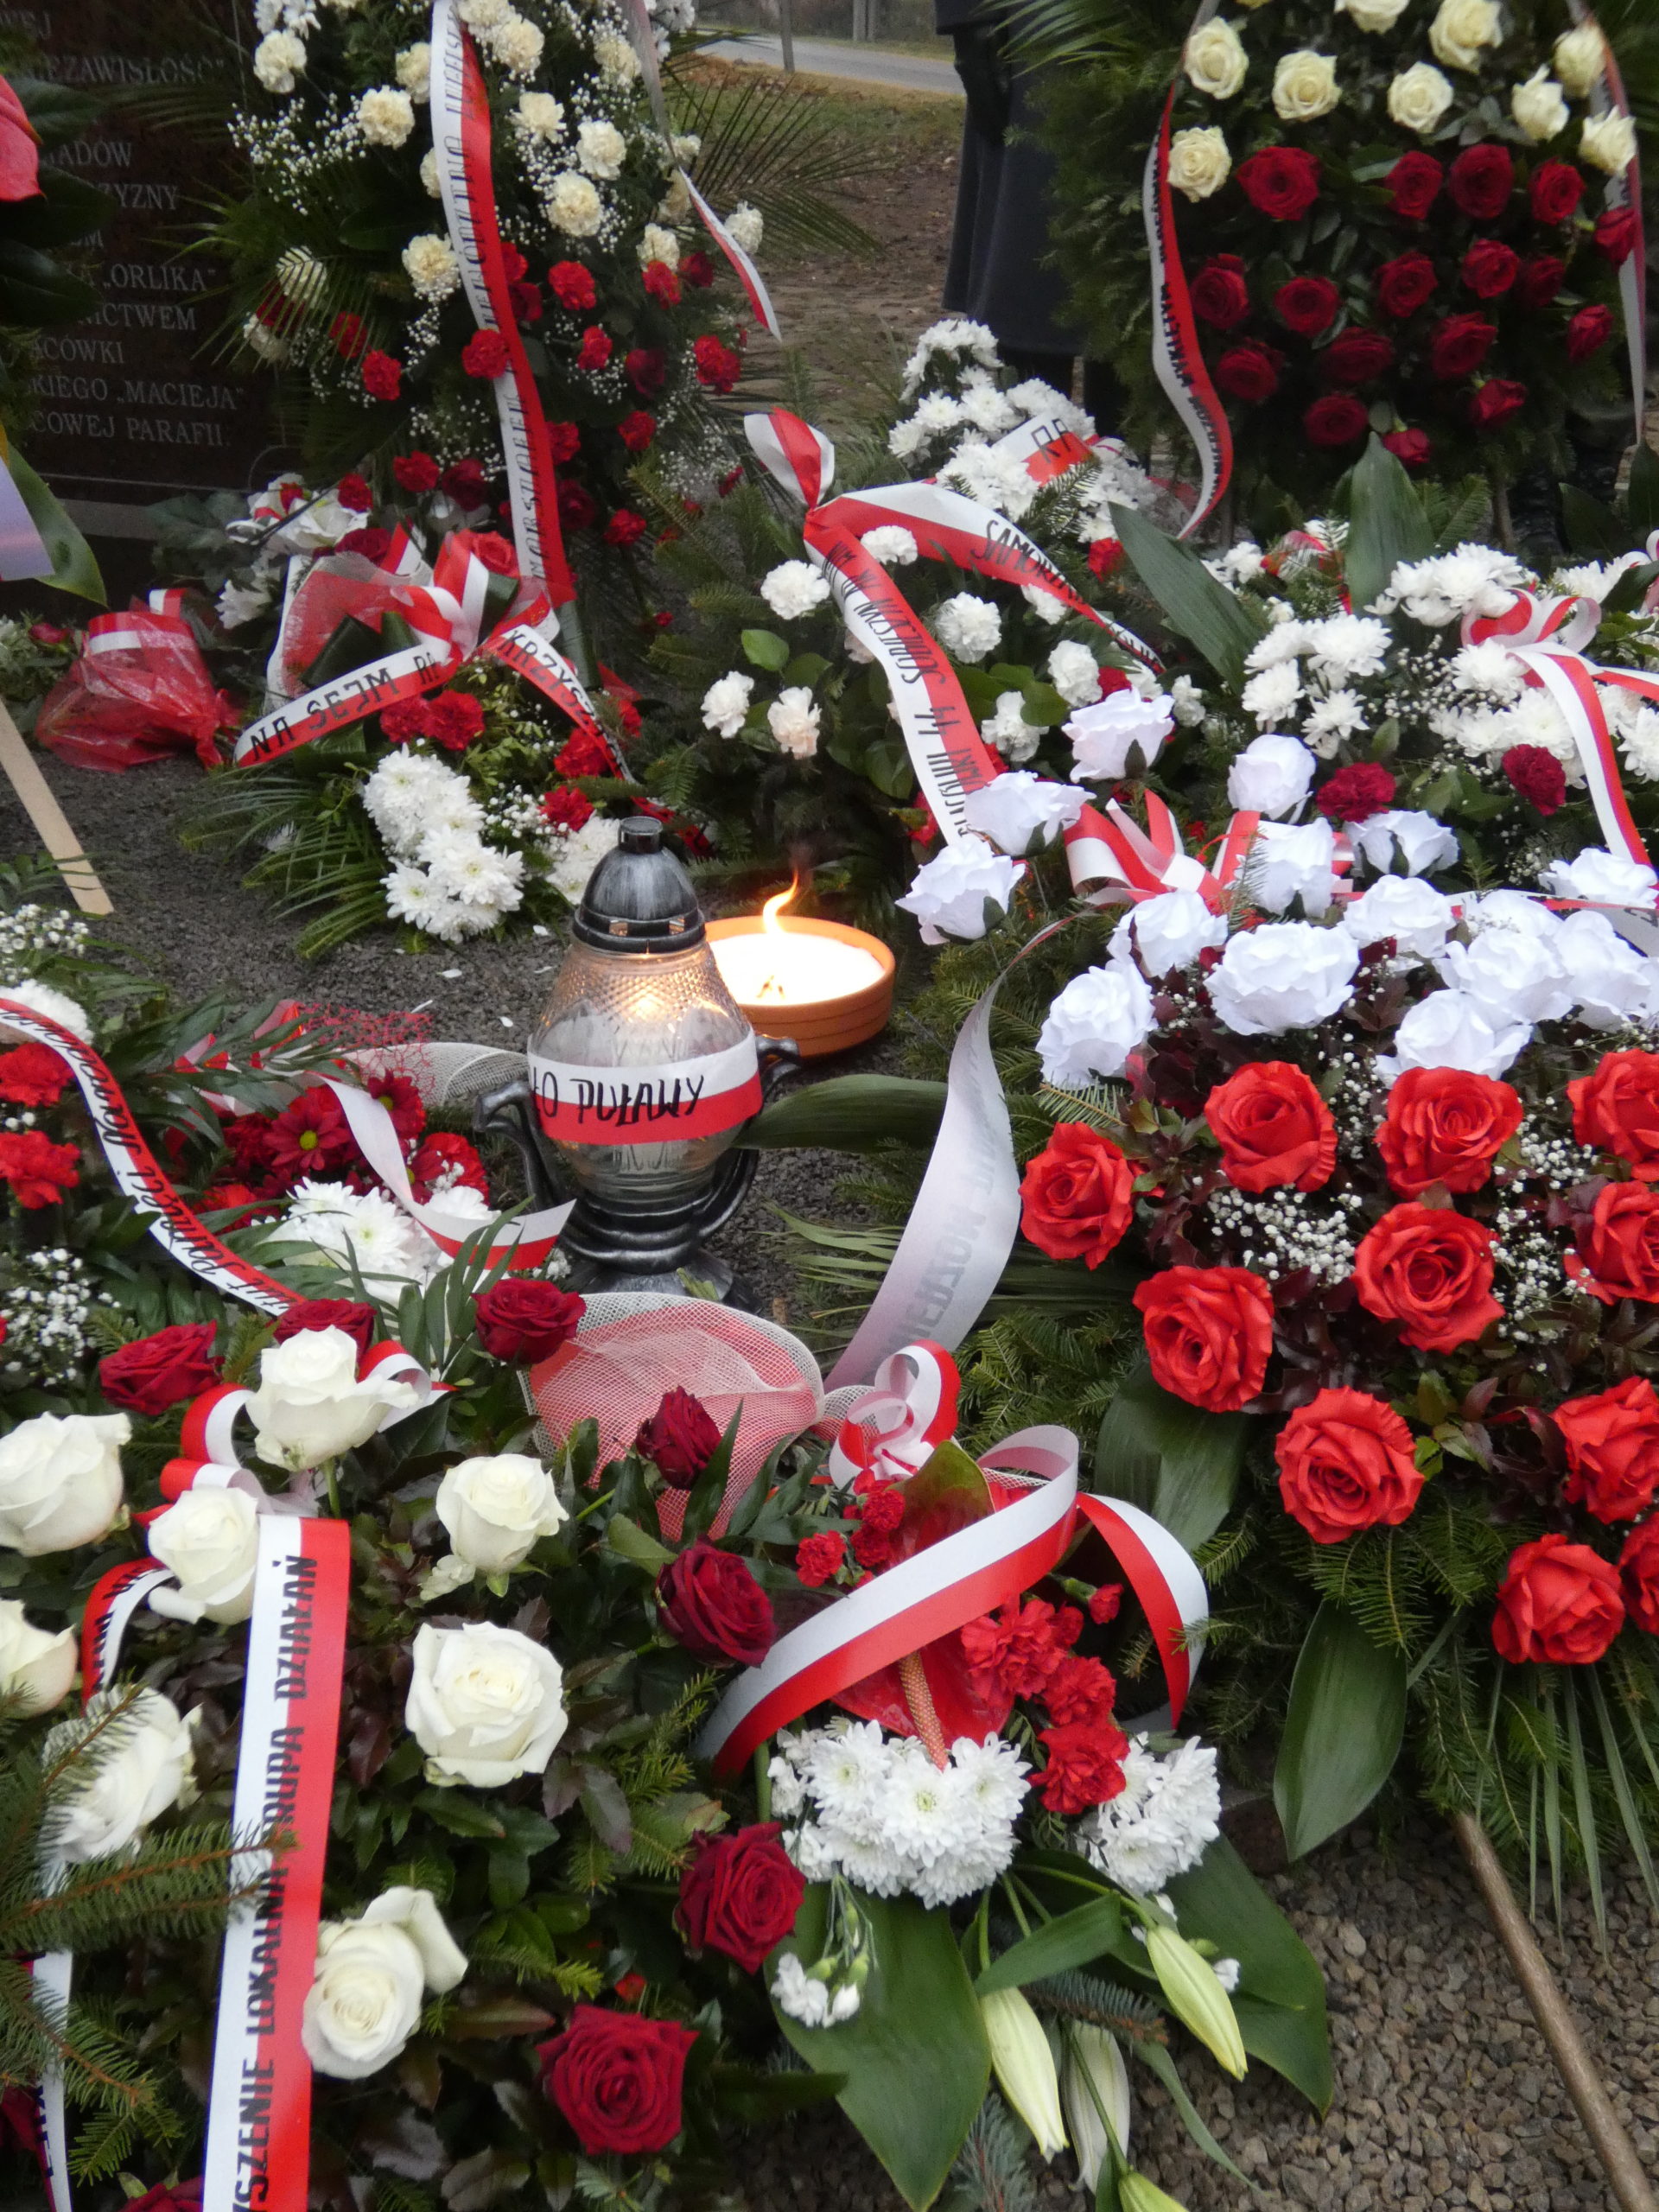 Uroczyste odsłonięcie i poświęcenie Pomnika jako Miejsca Pamięci Narodowej Żołnierzy Wyklętych Placówki 44 Sobieszyn AK Win – PODSUMOWANIE